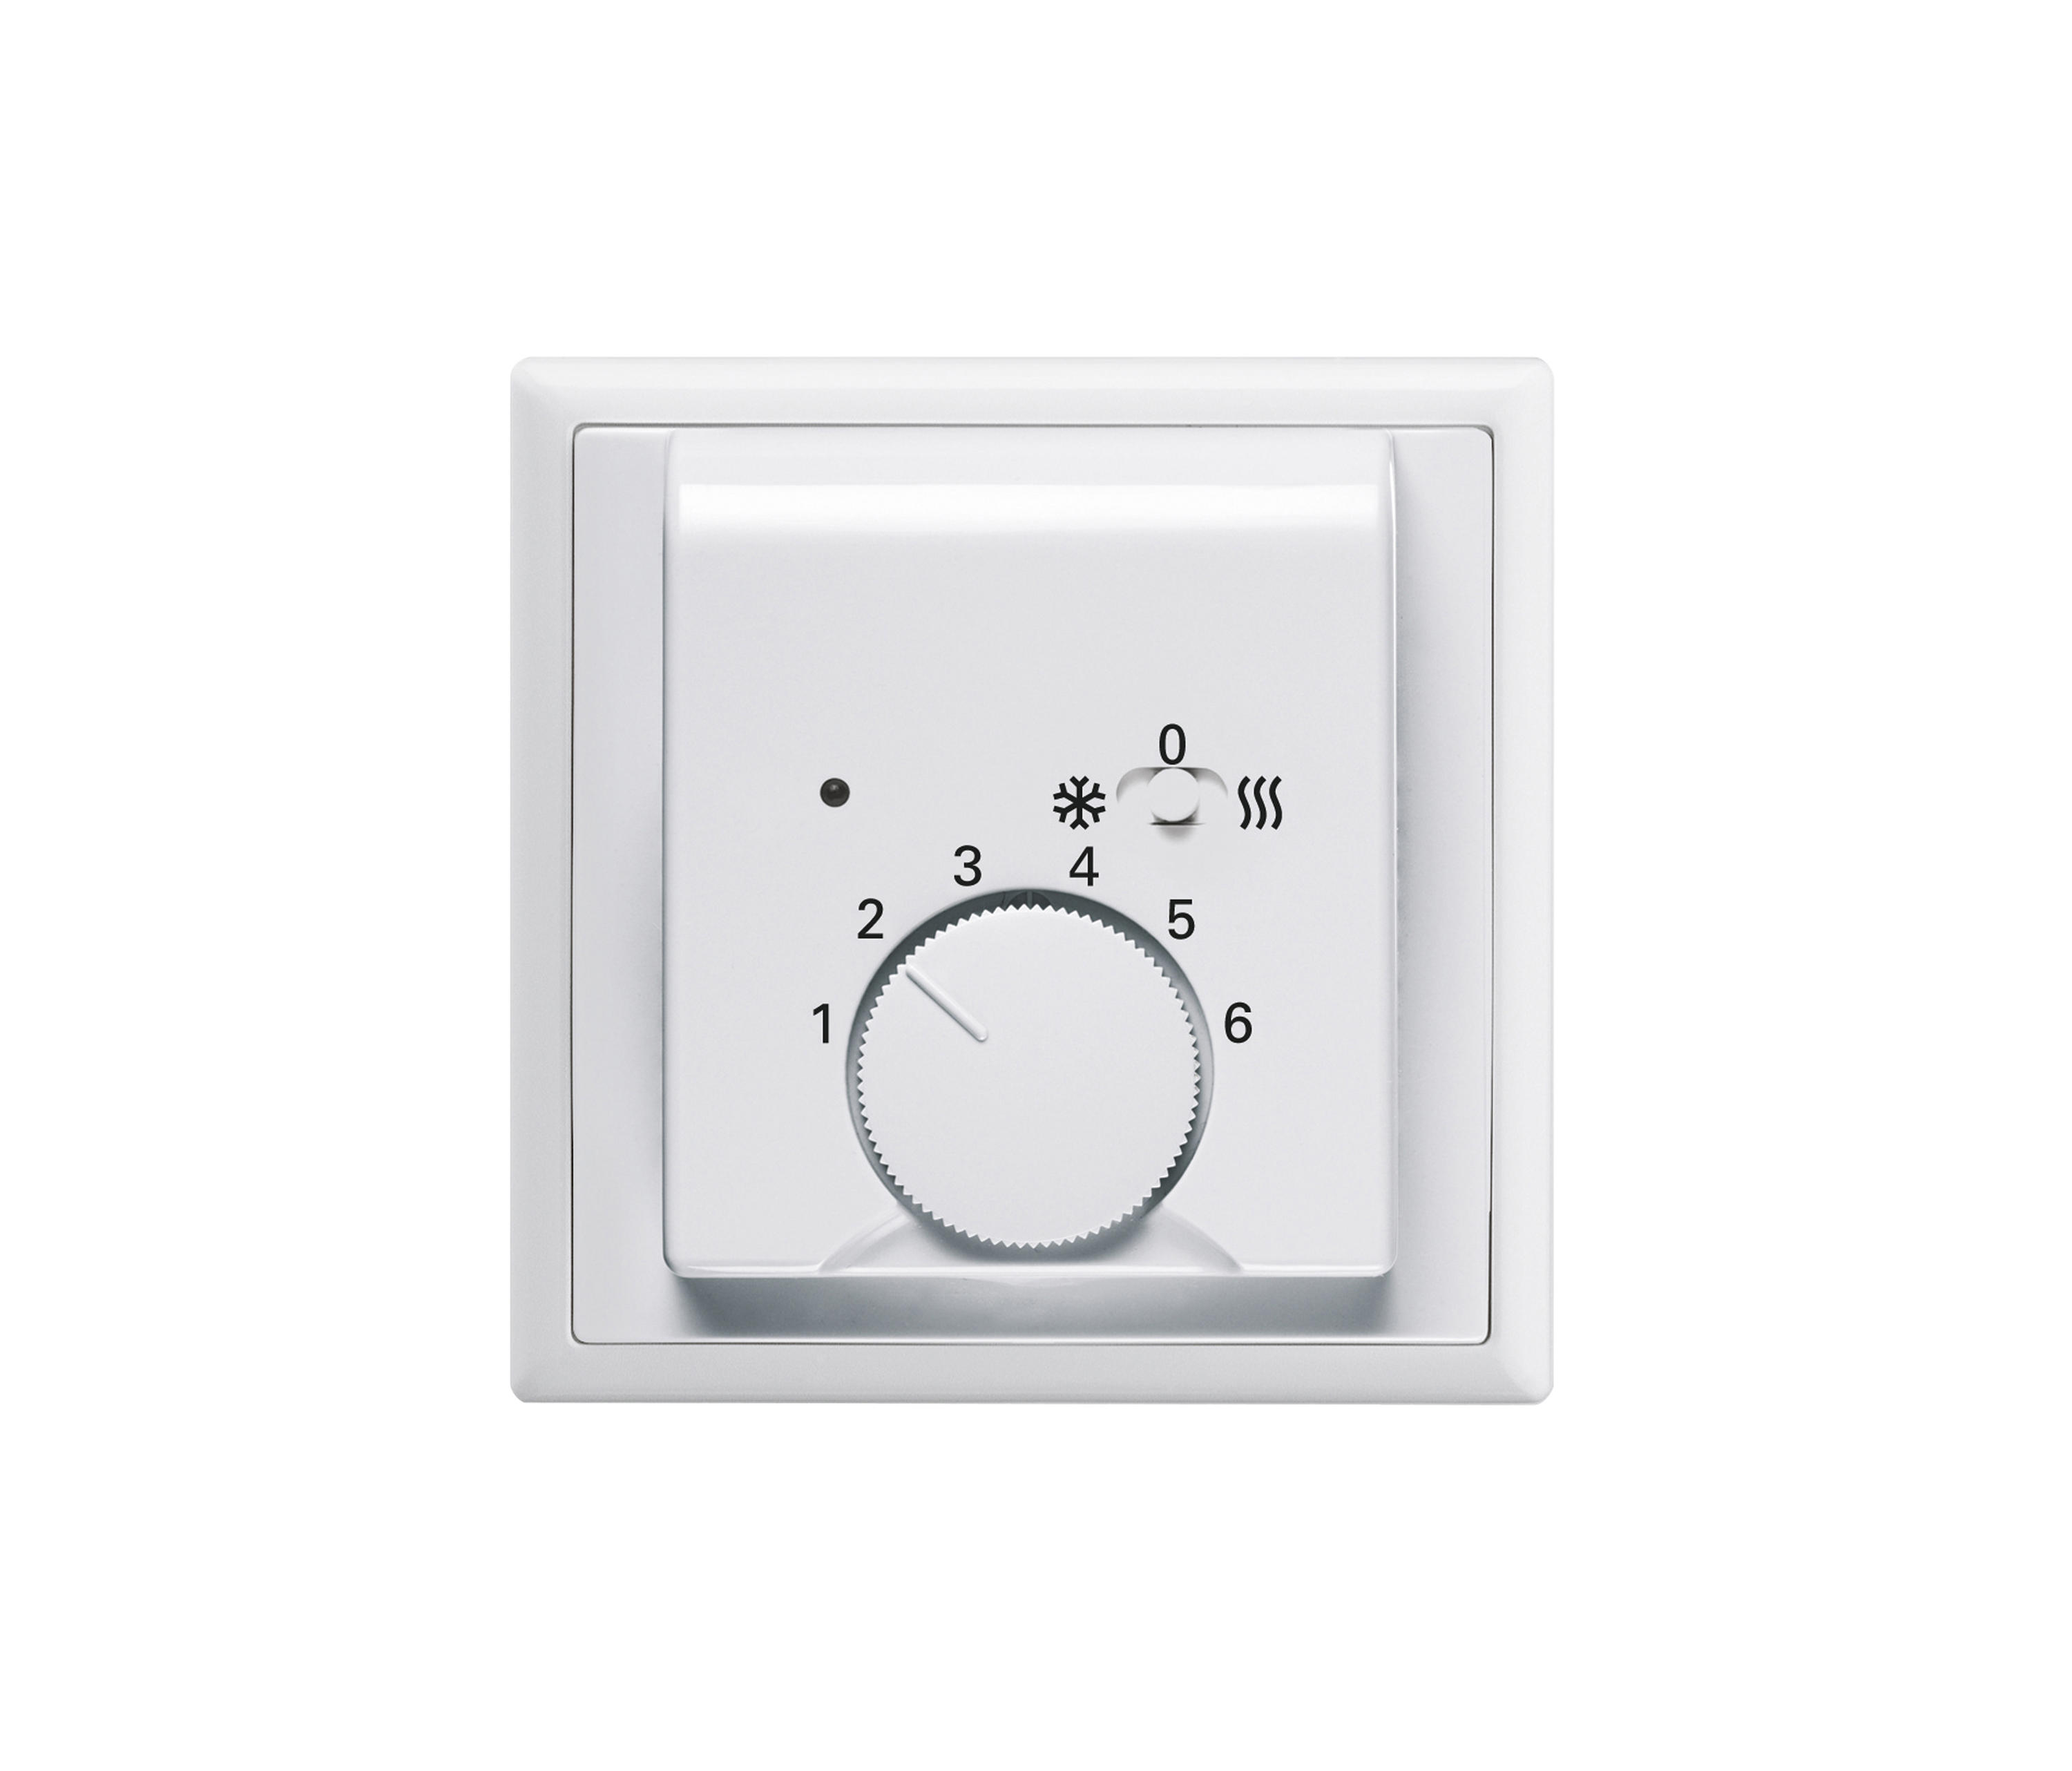 Thermostats, Thermostat mit Schalter Heizen/Kühlen